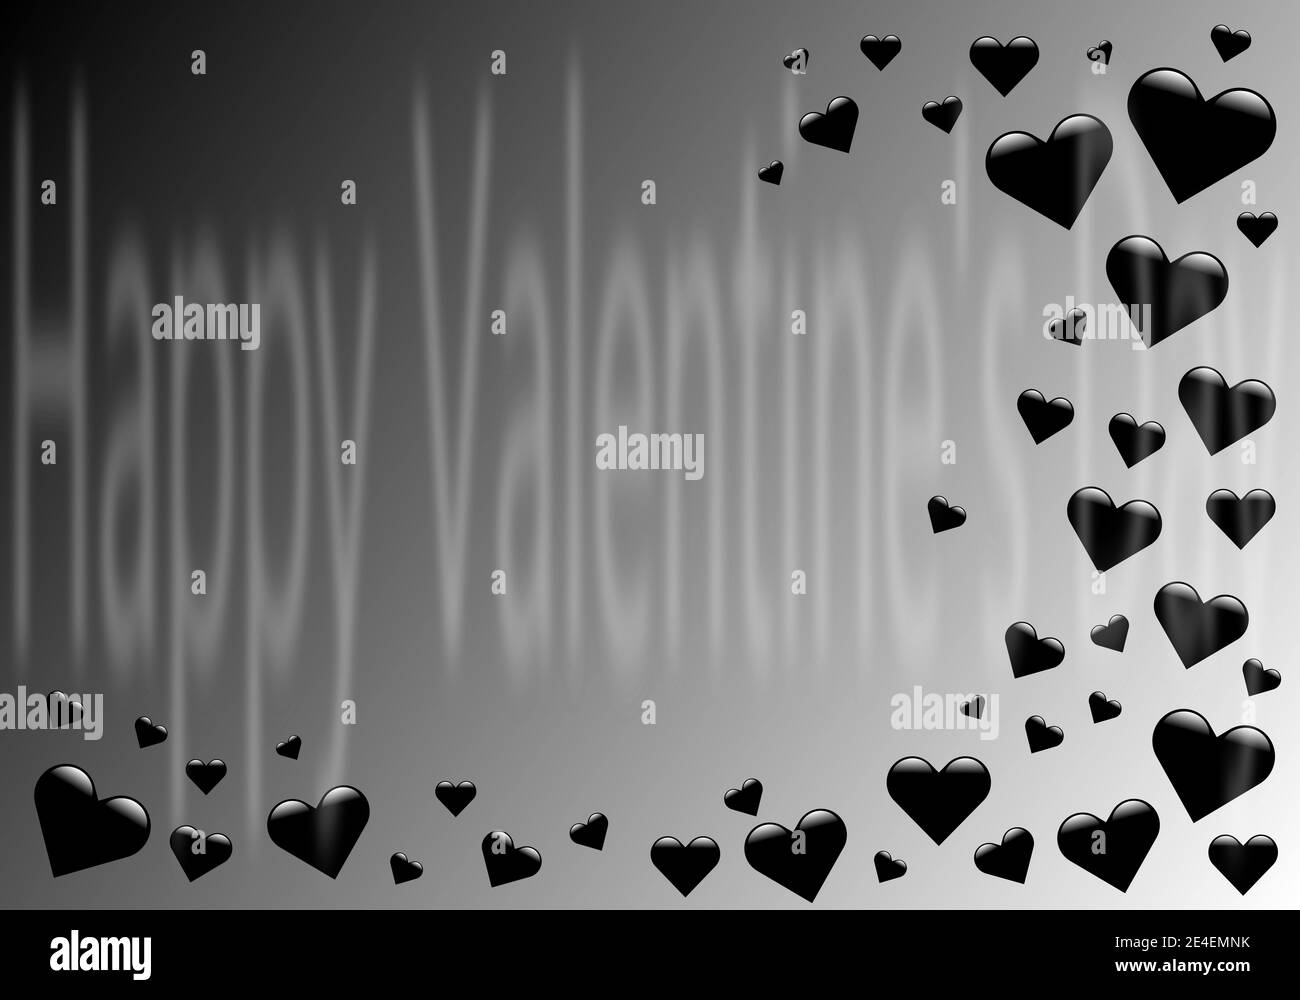 Plantilla de banner de San Valentín para publicidad en medios sociales, invitación o diseño de pósteres con formas de corazón negro sobre fondo gris. Foto de stock